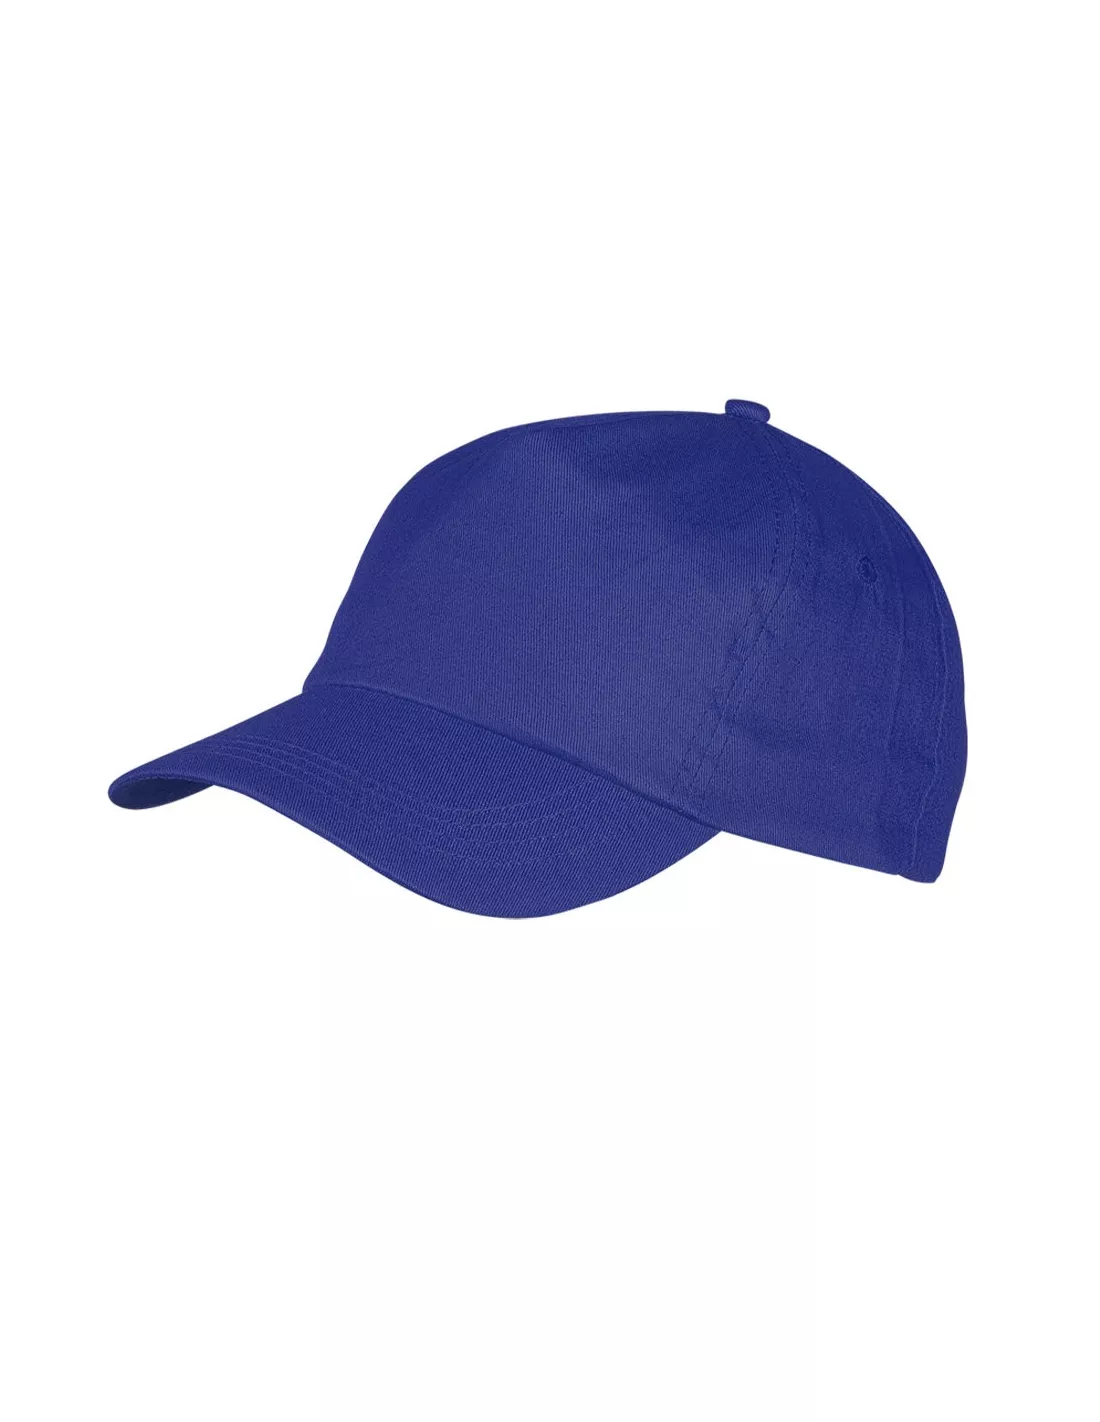 gorras deportivas personalizadas para eventos